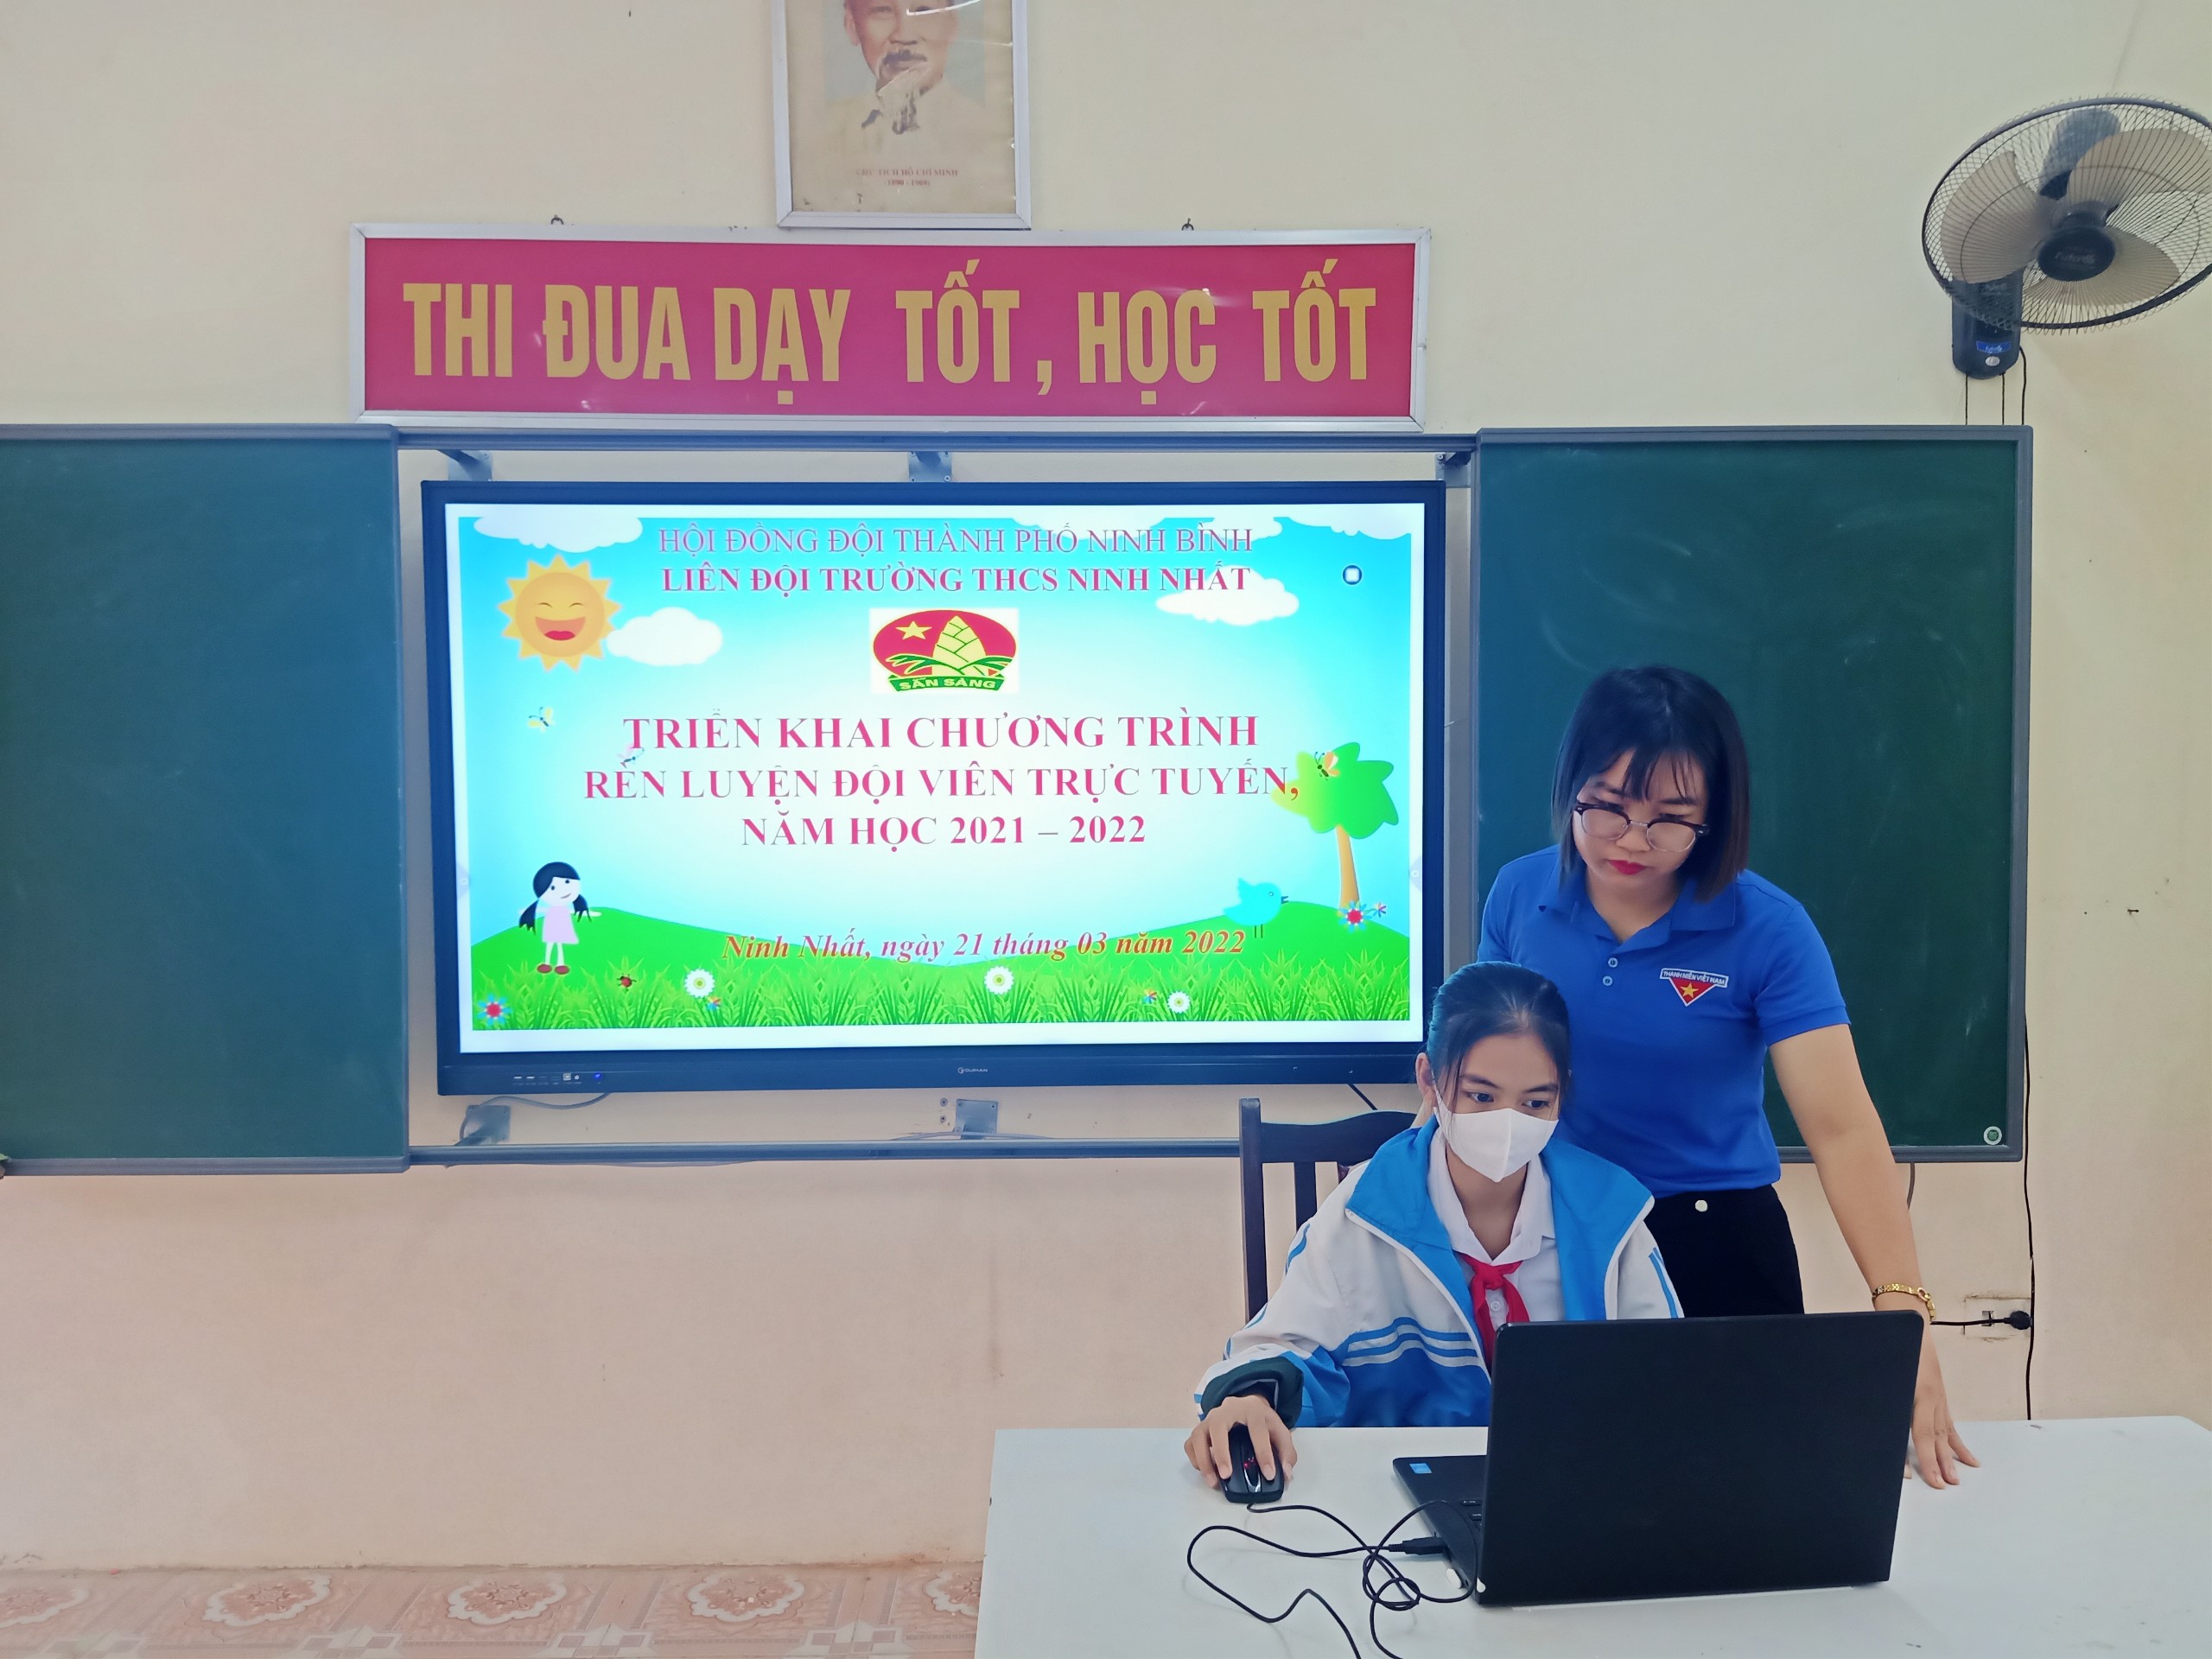 Triển khai chương trình rèn luyện đội viên trực tuyến tại trường THCS Ninh Nhất